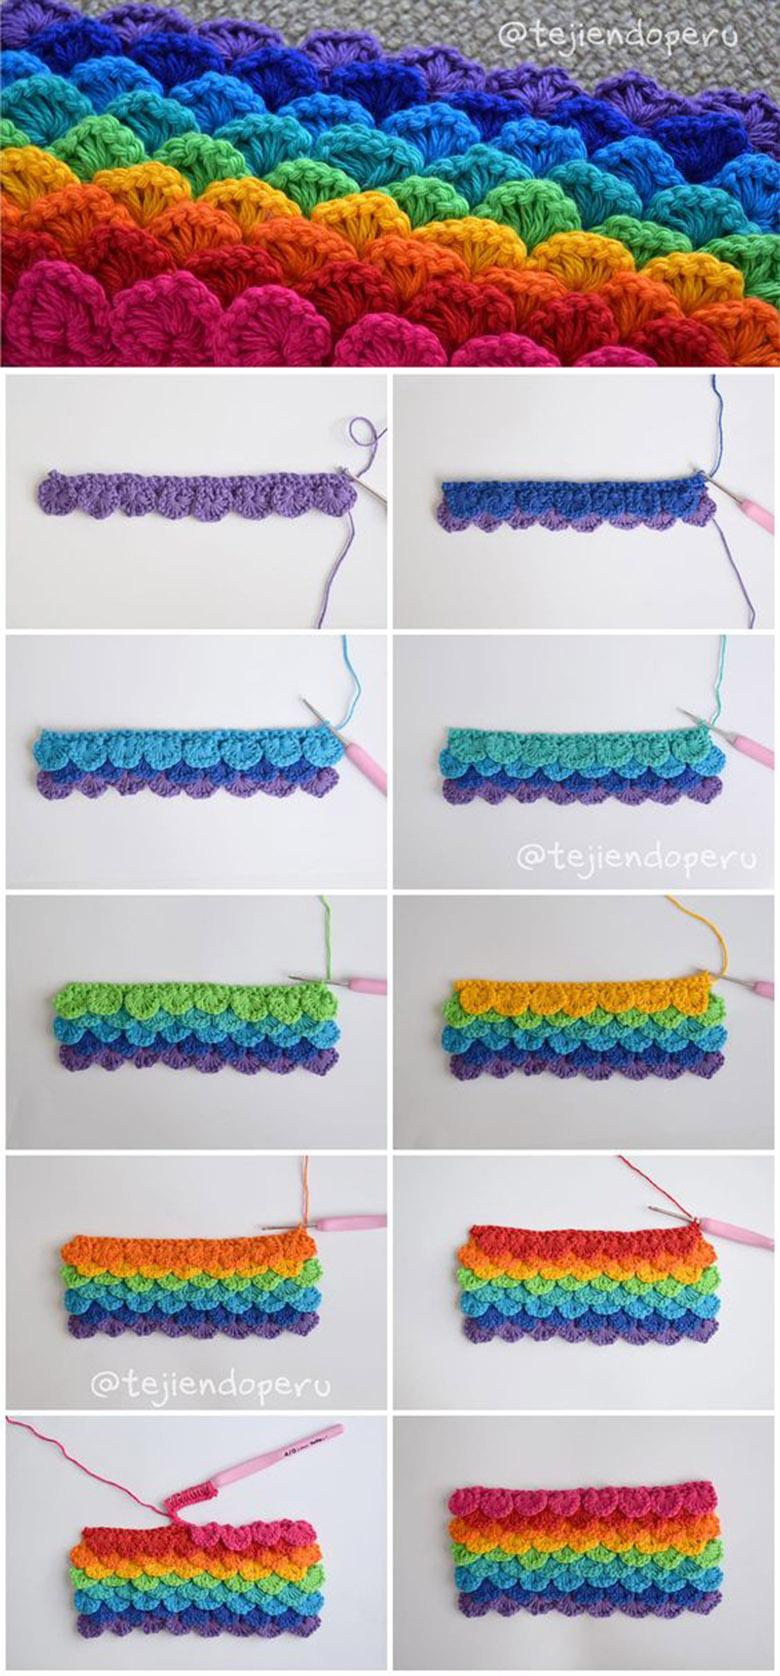 crochet crocodile stitch pattern 1